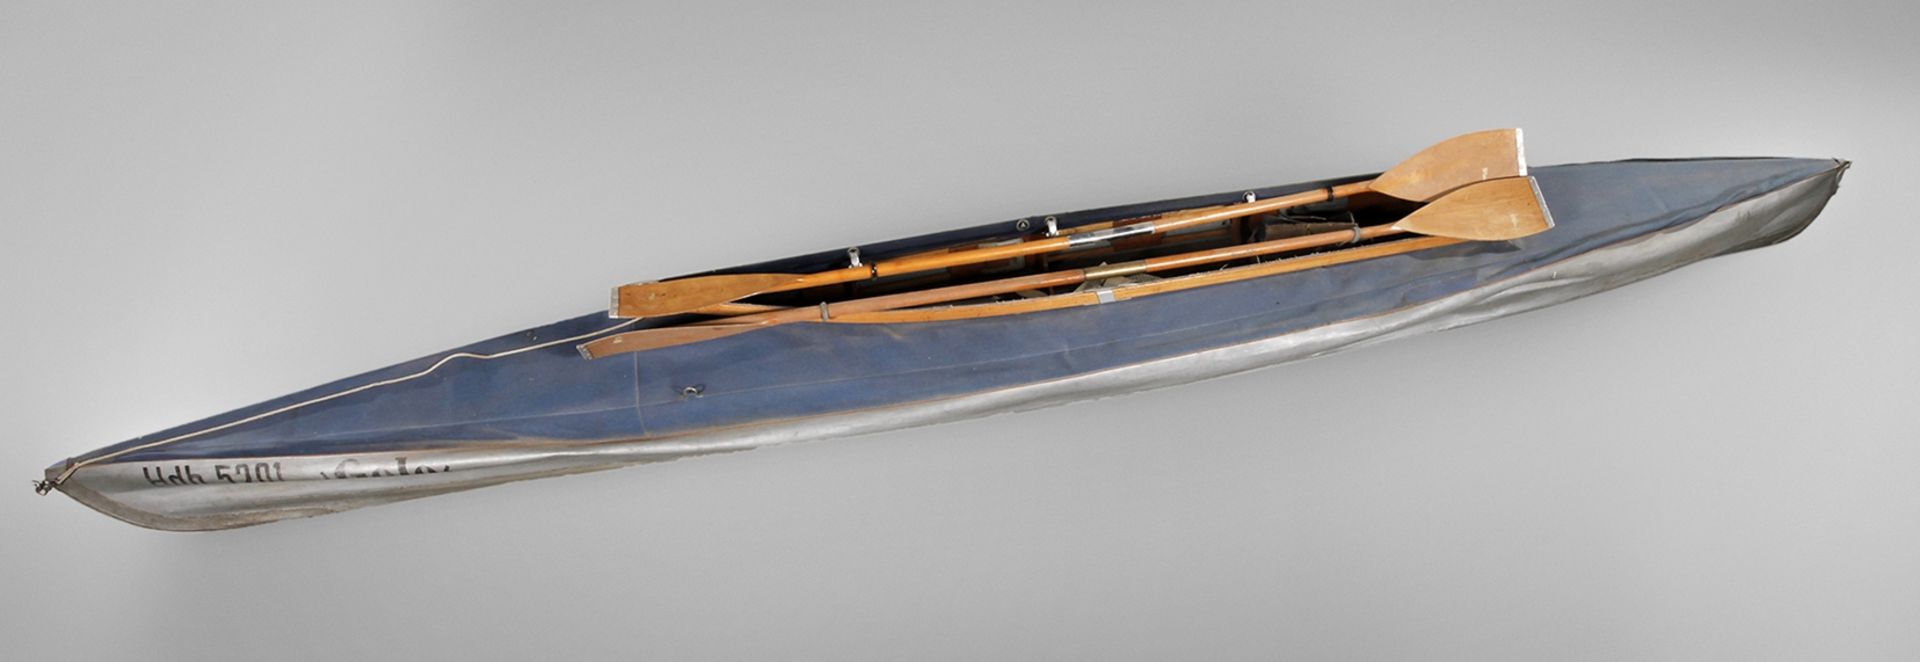 Faltboot1960er Jahre, gemarkt Klepper Hdb 5201 Golo sowie bezeichnet Aerius, großes Kanu mit Skelett